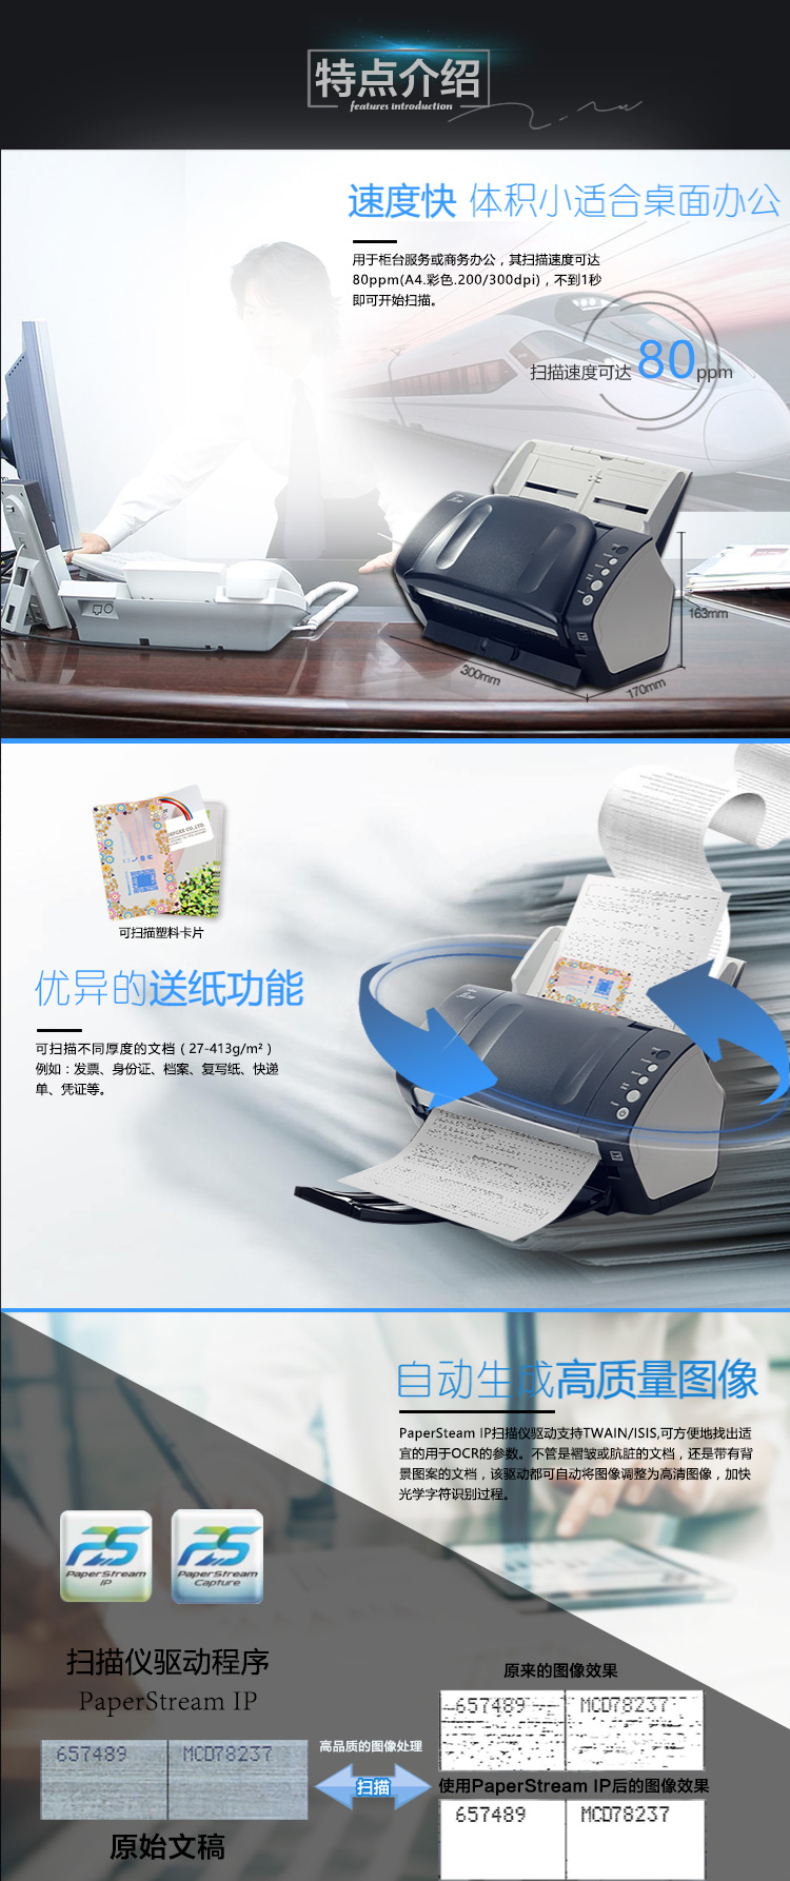 富士通 FUJITSU A4高速双面馈纸式扫描仪 Fi-7180 